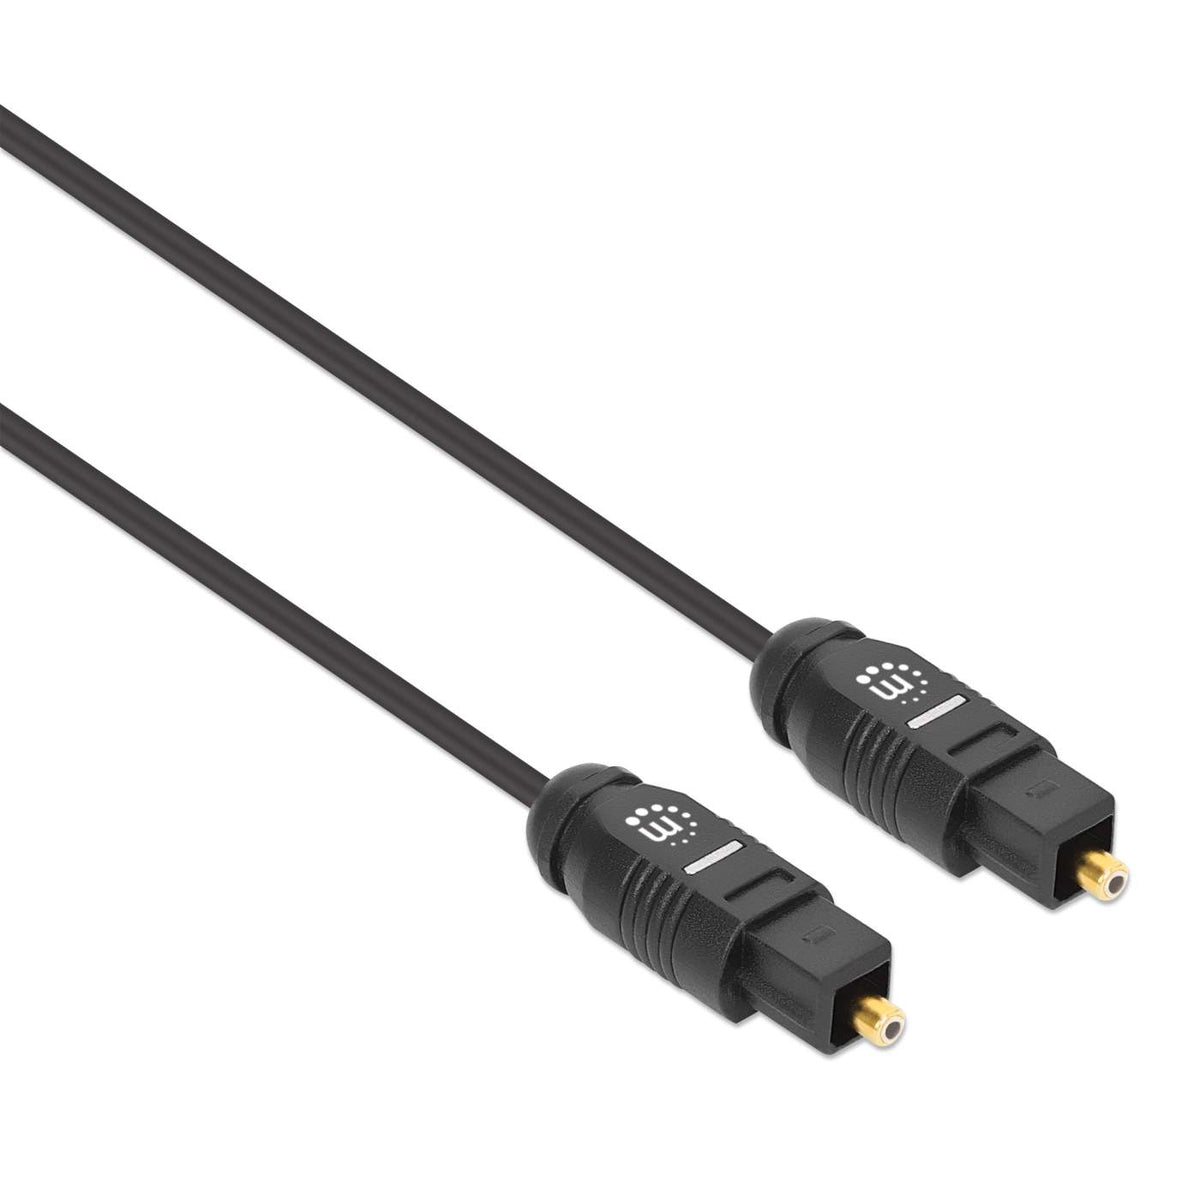 Câble numérique kabeldirekt optical toslink 2m - Connectique Audio